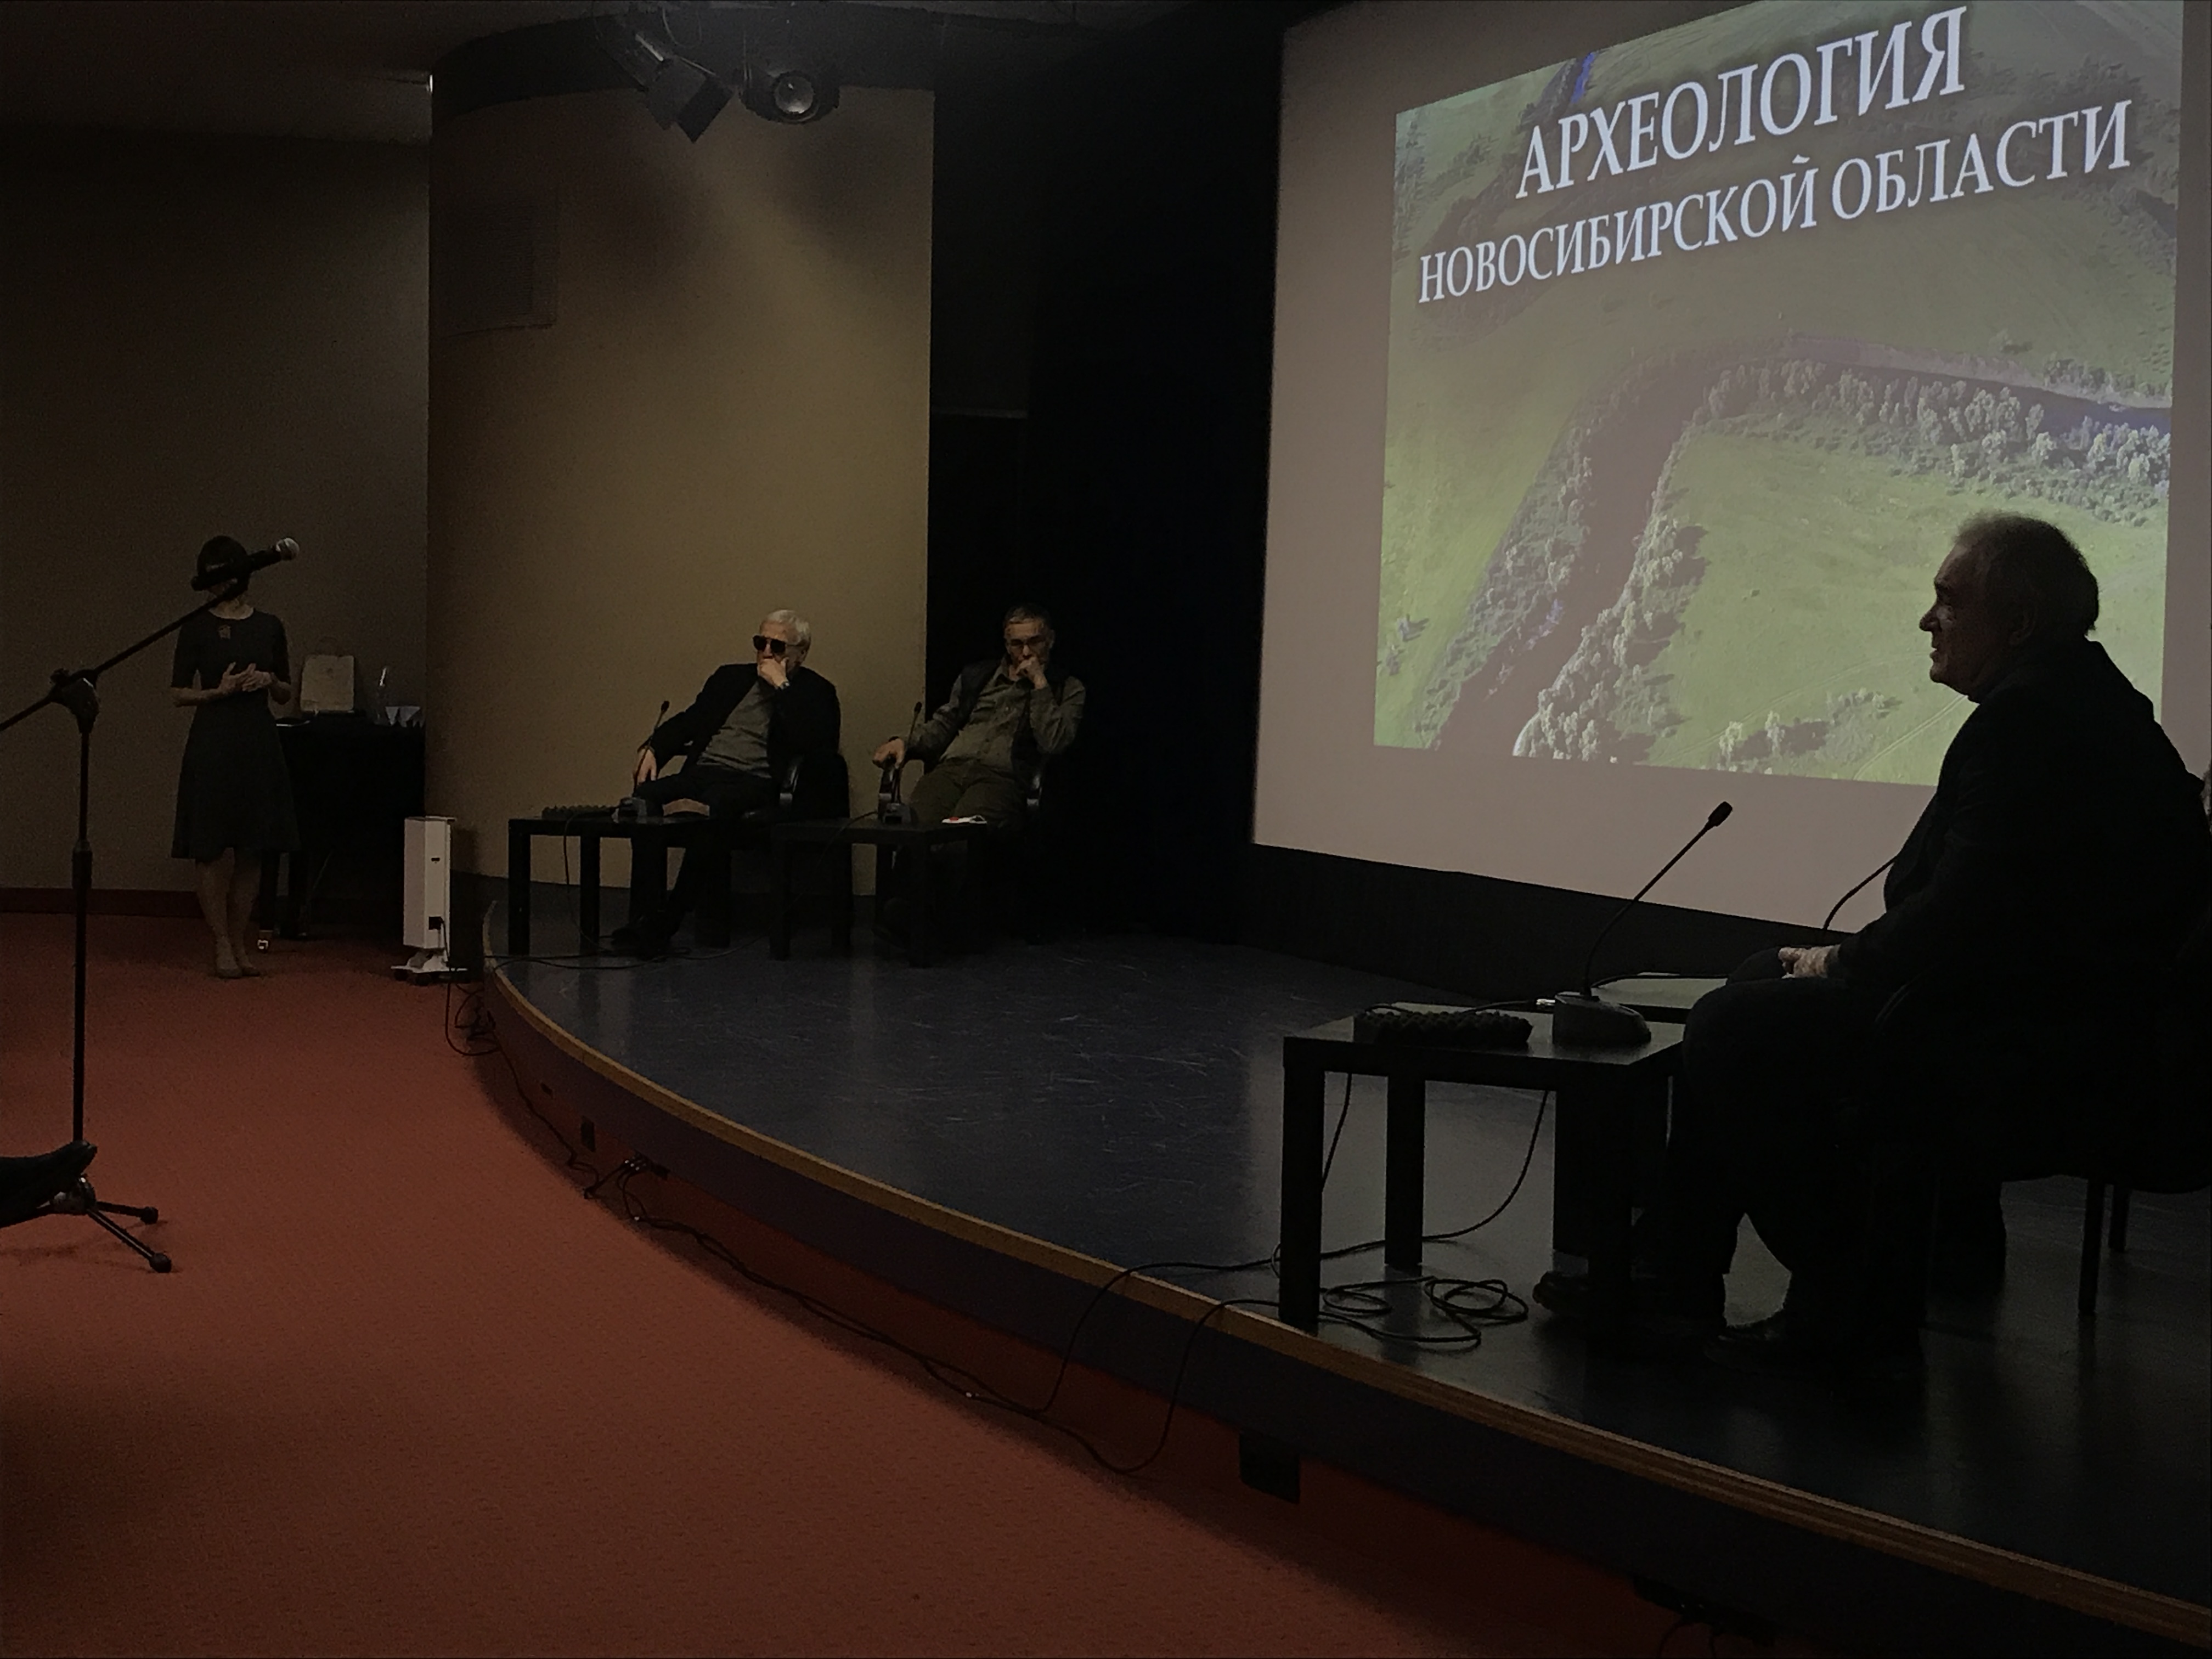 Фильм об археологии новосибирской области